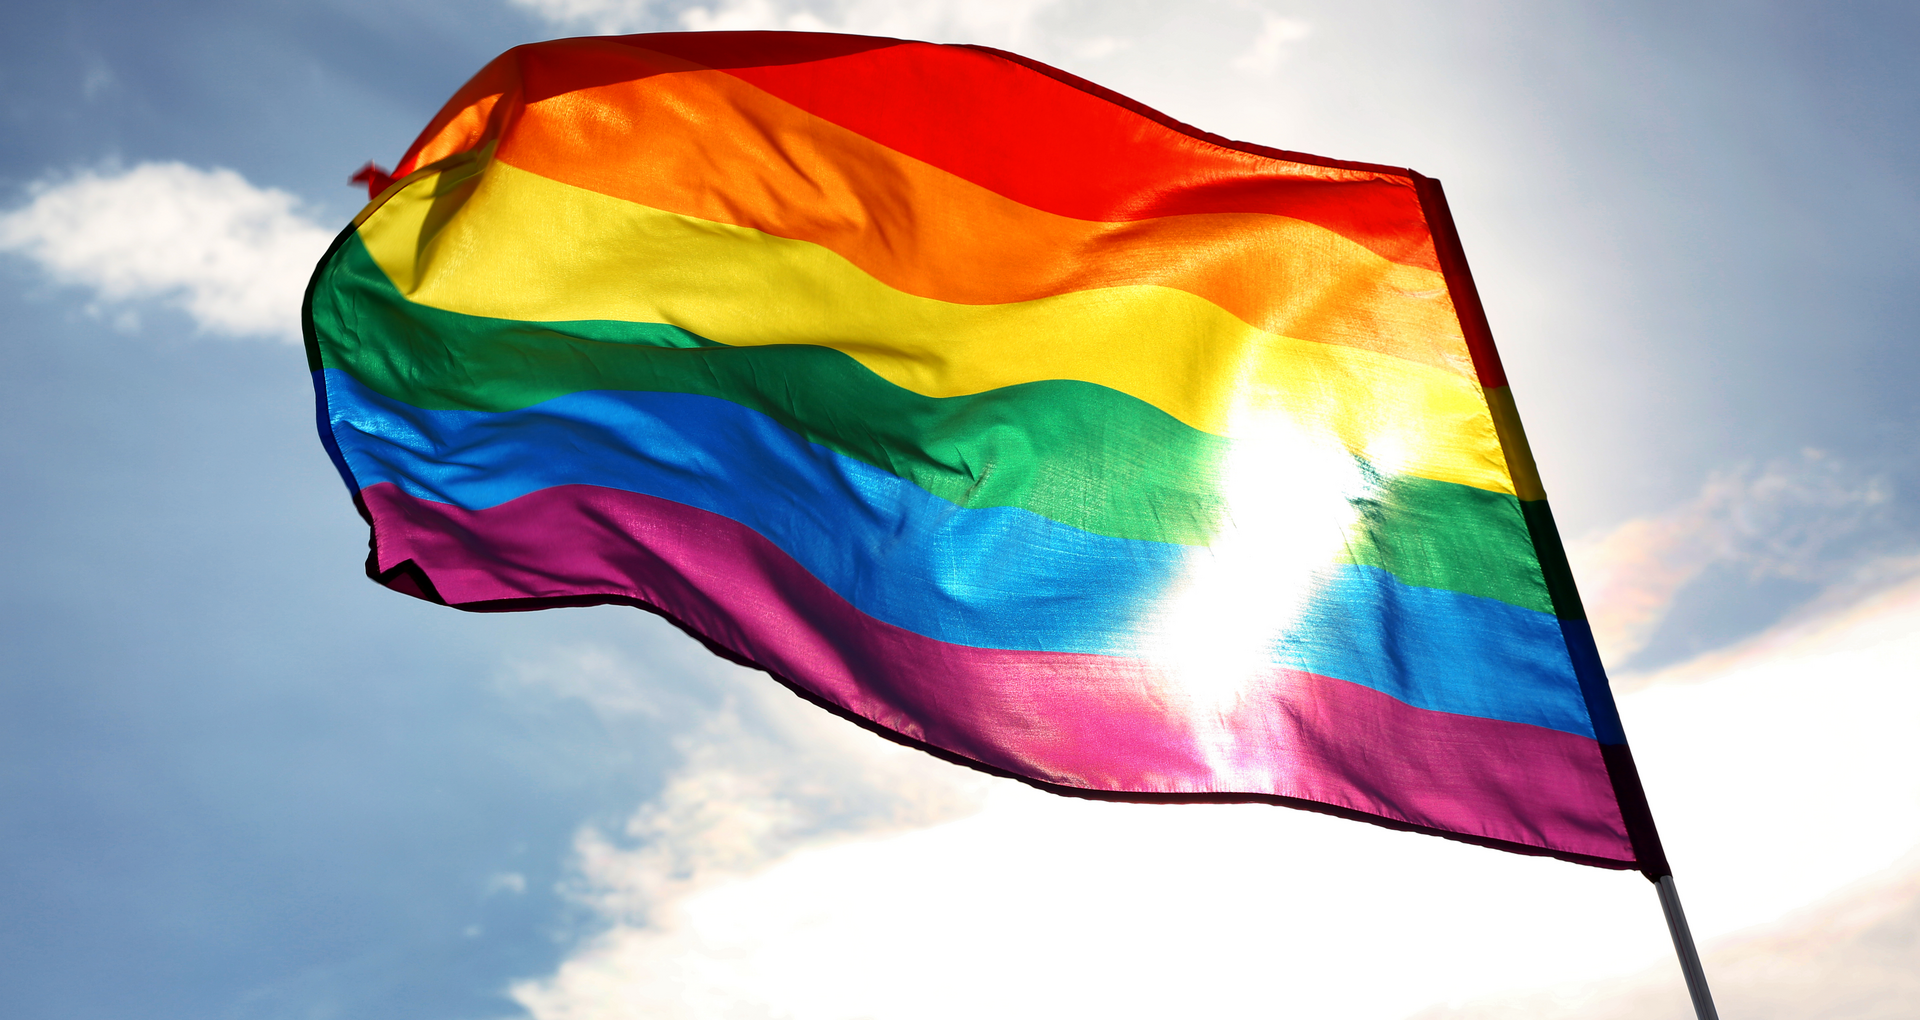 LGBT w Warszawie: ktoś przyozdobił pomniki tęczową flagą - Warszawa